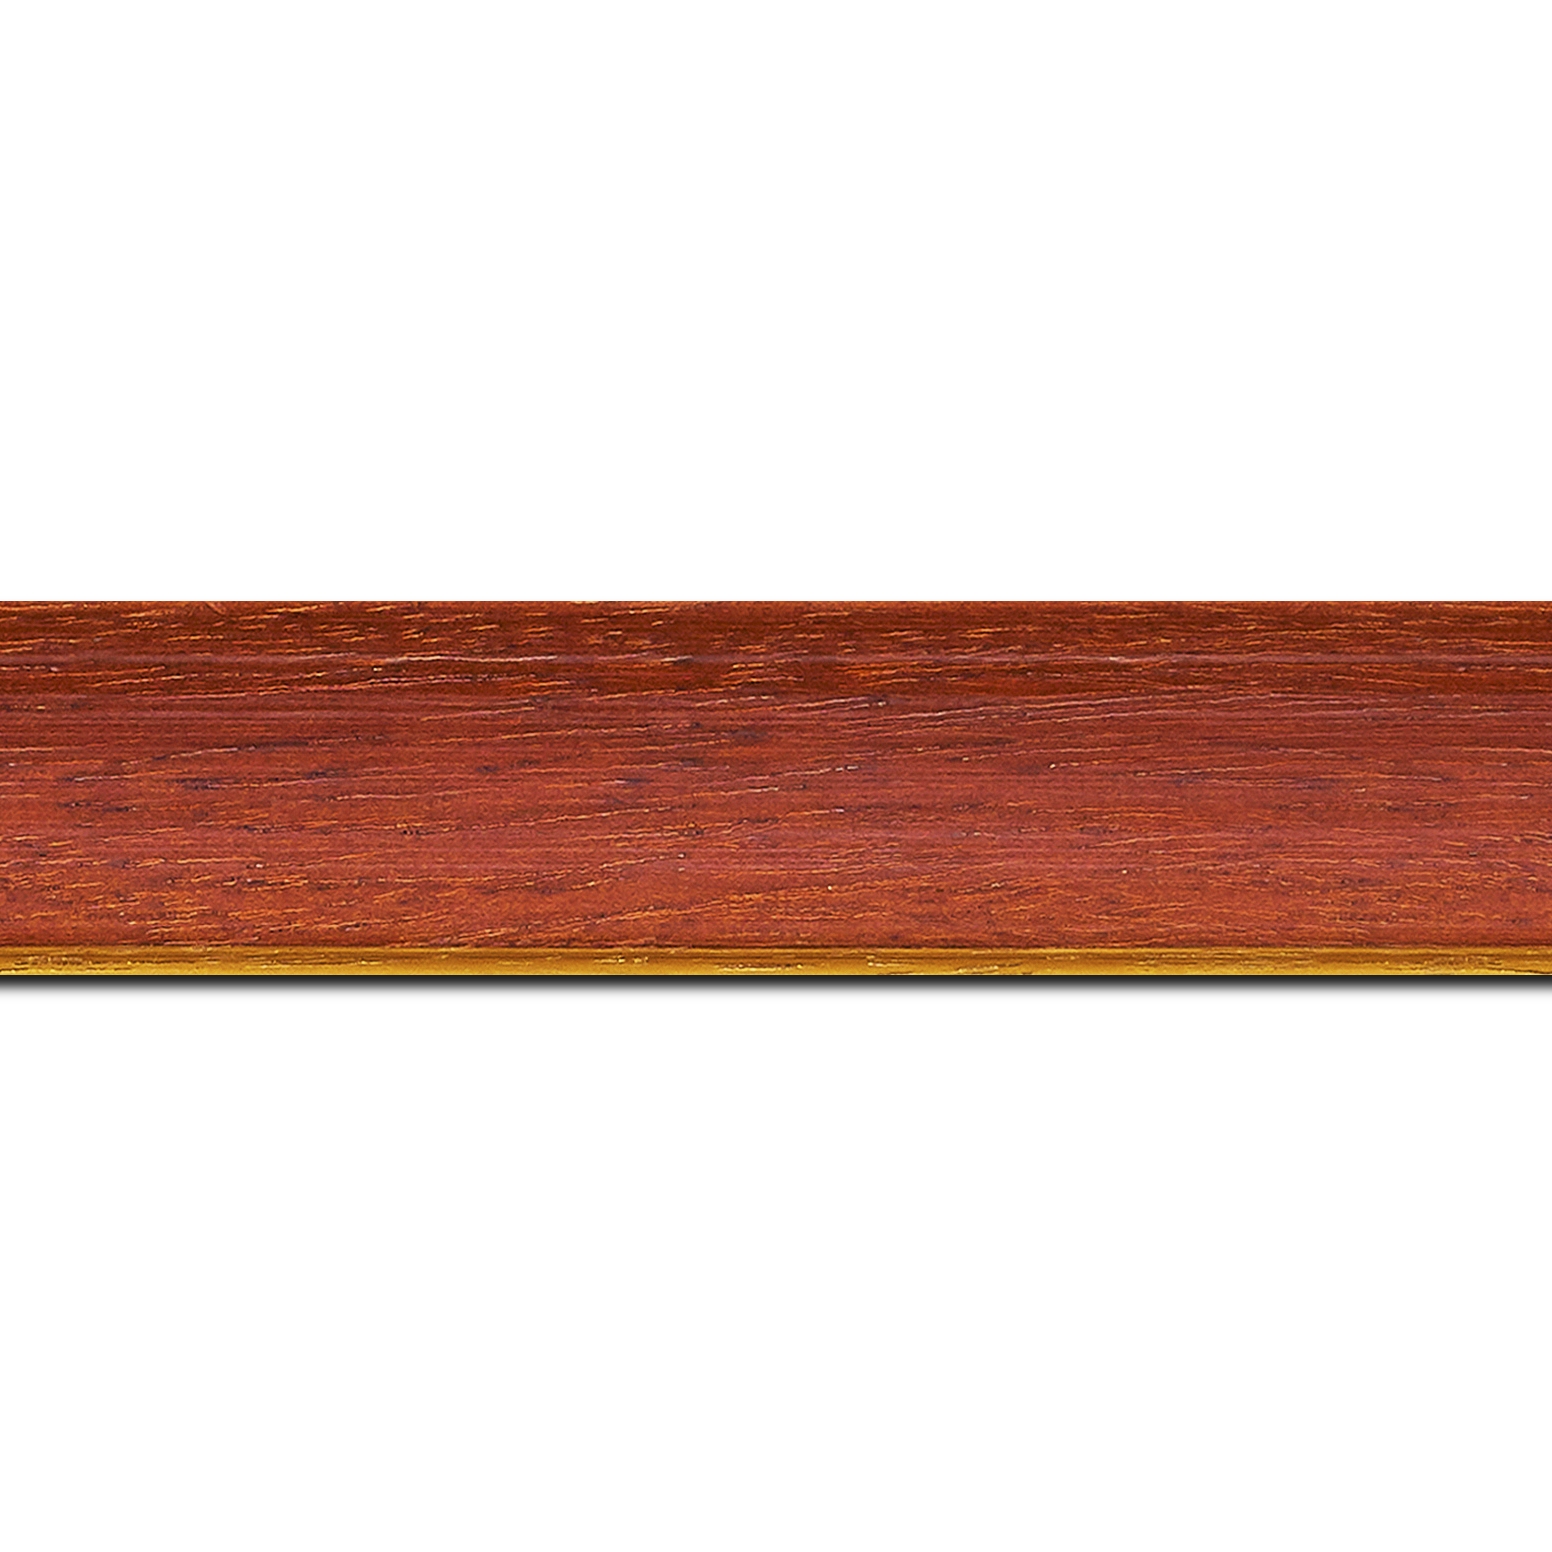 Pack par 12m, bois profil incurvé largeur 3.9cm couleur rouge cerise satiné filet or (longueur baguette pouvant varier entre 2.40m et 3m selon arrivage des bois)